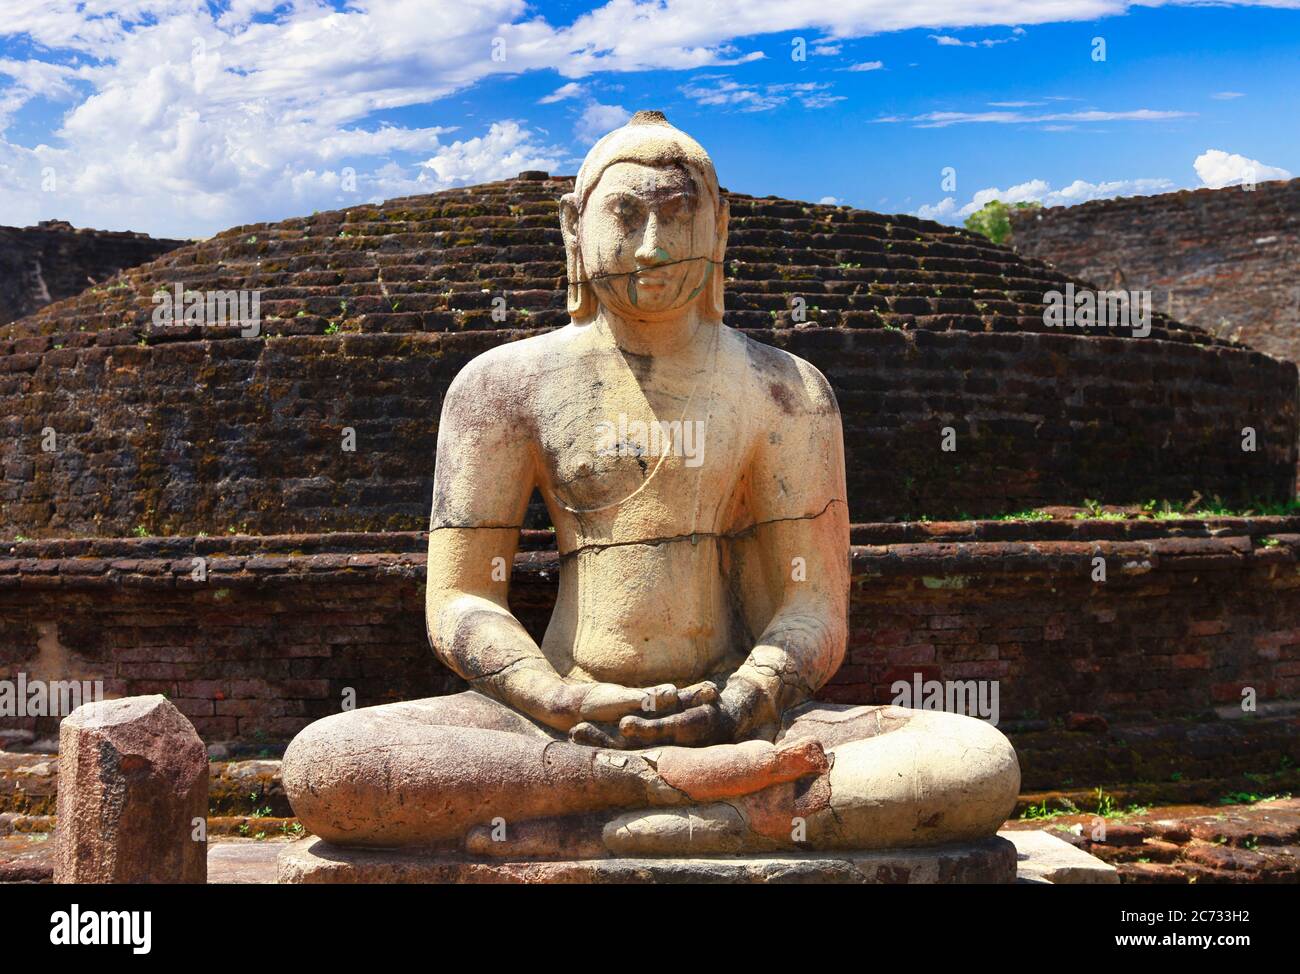 Voyage et monuments au Sri Lanka - ancienne ville de Polonnaruwa, site classé au patrimoine mondial de l'UNESCO. Statue de Bouddha dans le temple de Vatadage Banque D'Images